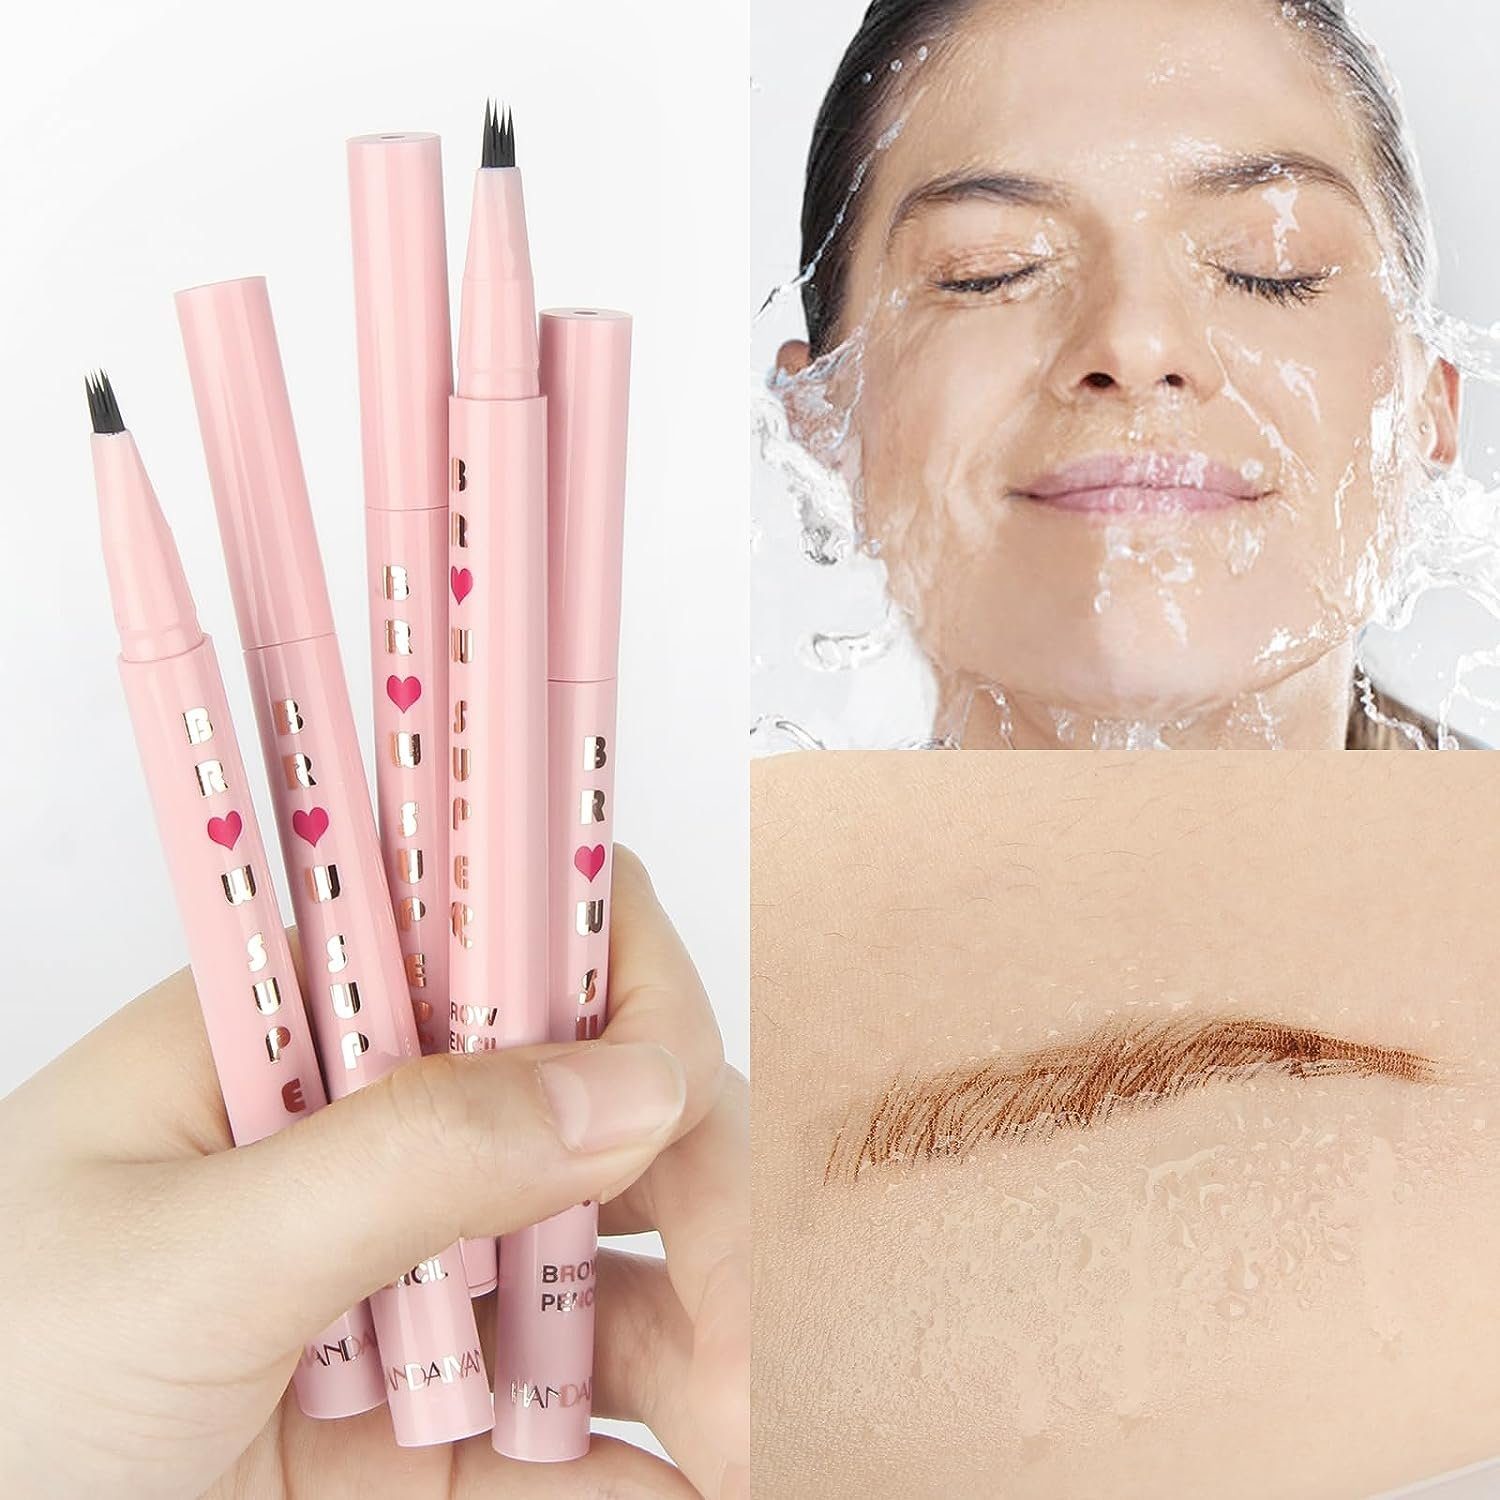 Pencil effekt, Haiaveng Wasserfest,Augenbrauenstift microblading mit Augenbrauenstift Naturhaareffekt Eyebrow Augenbrauen-Stift